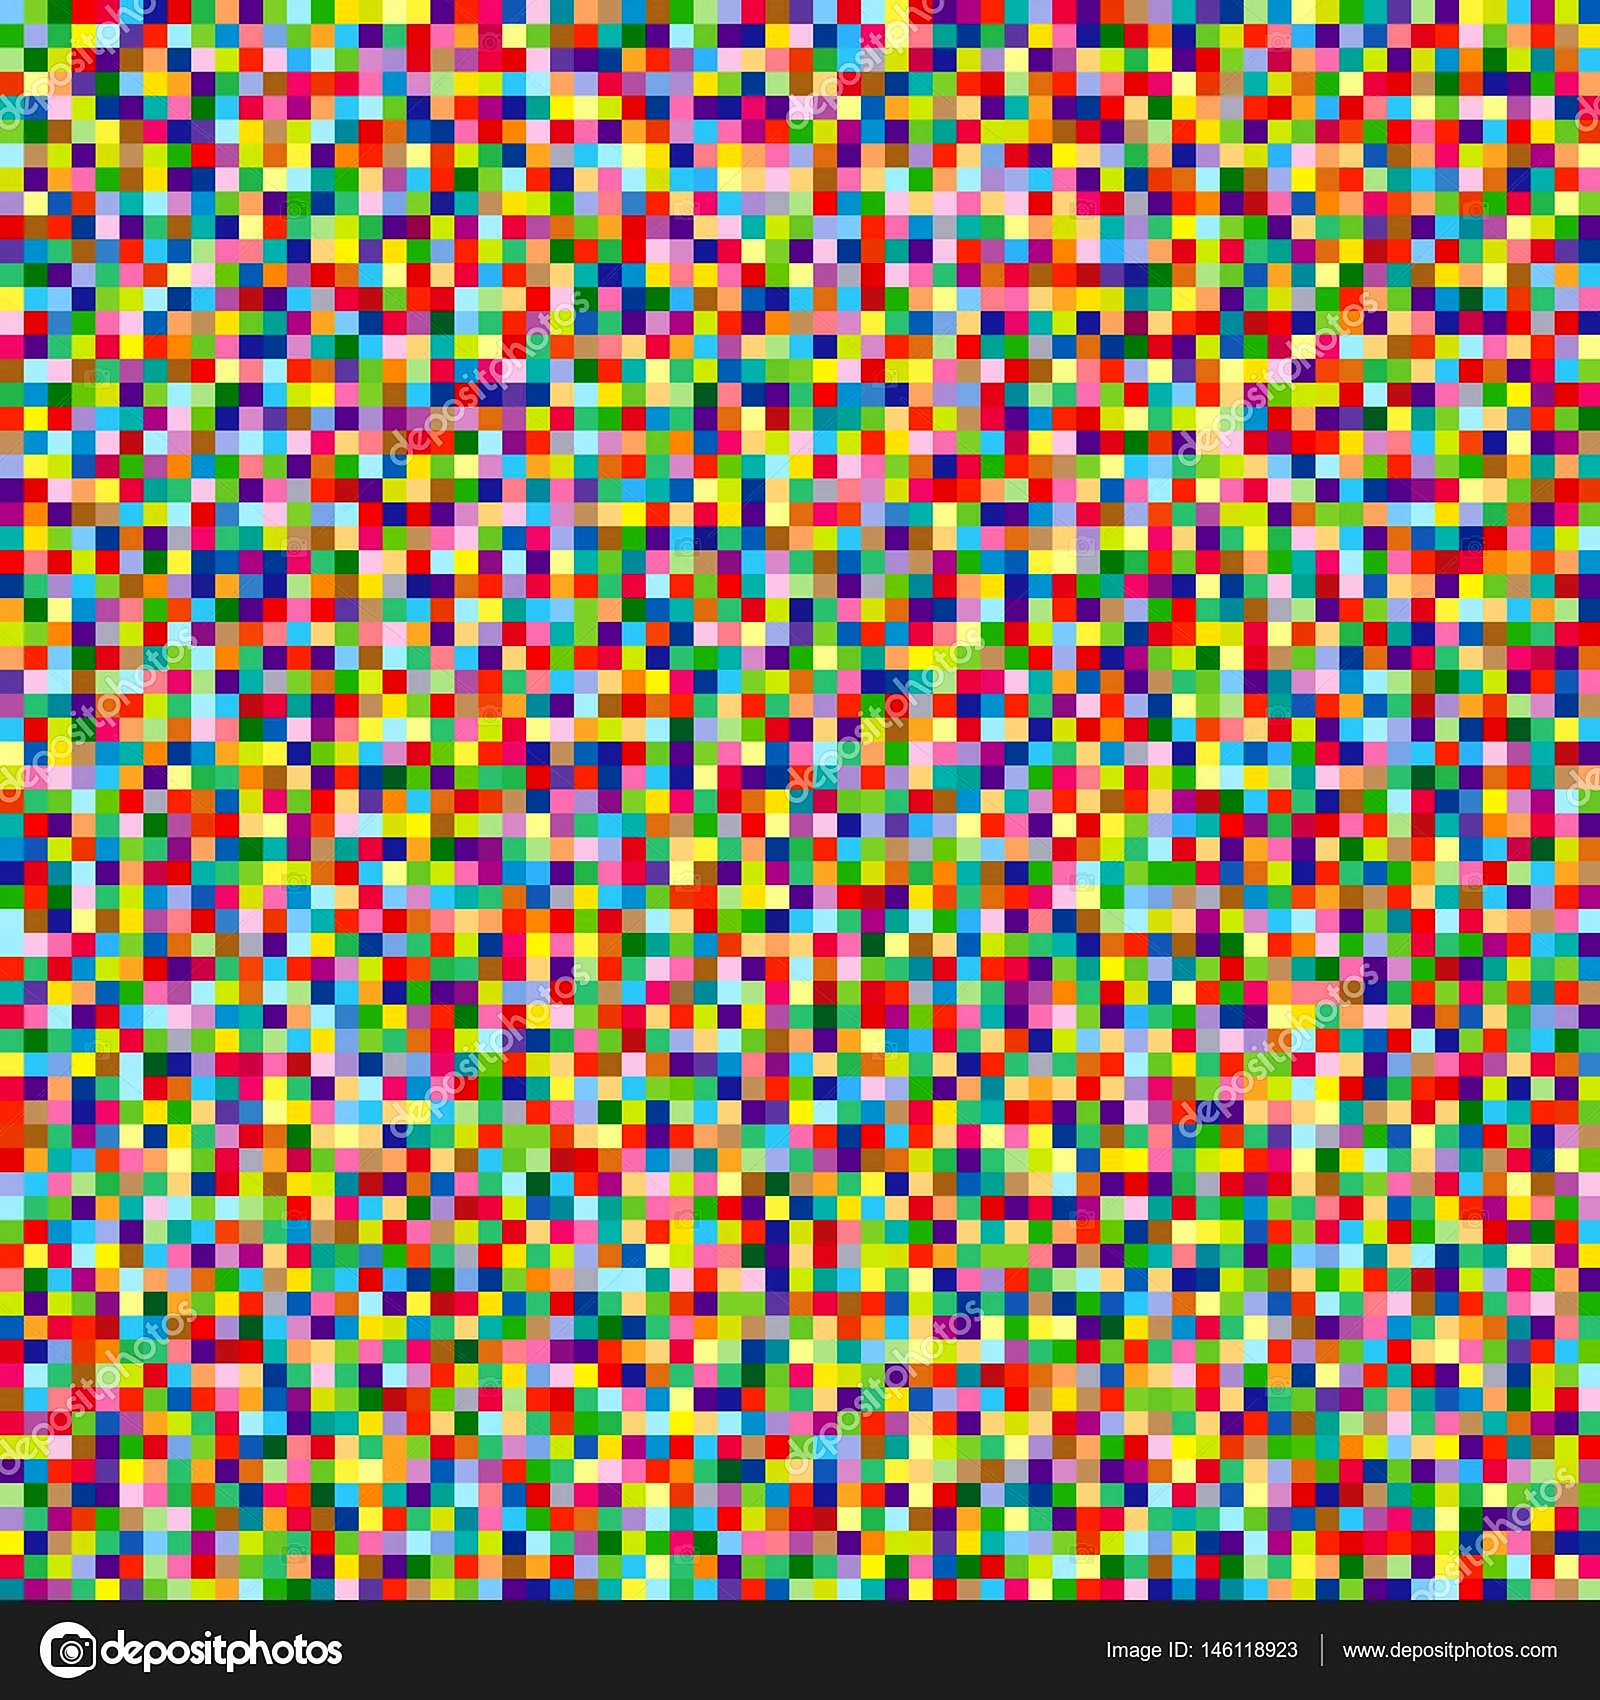 Разноцветные квадратики мелкие